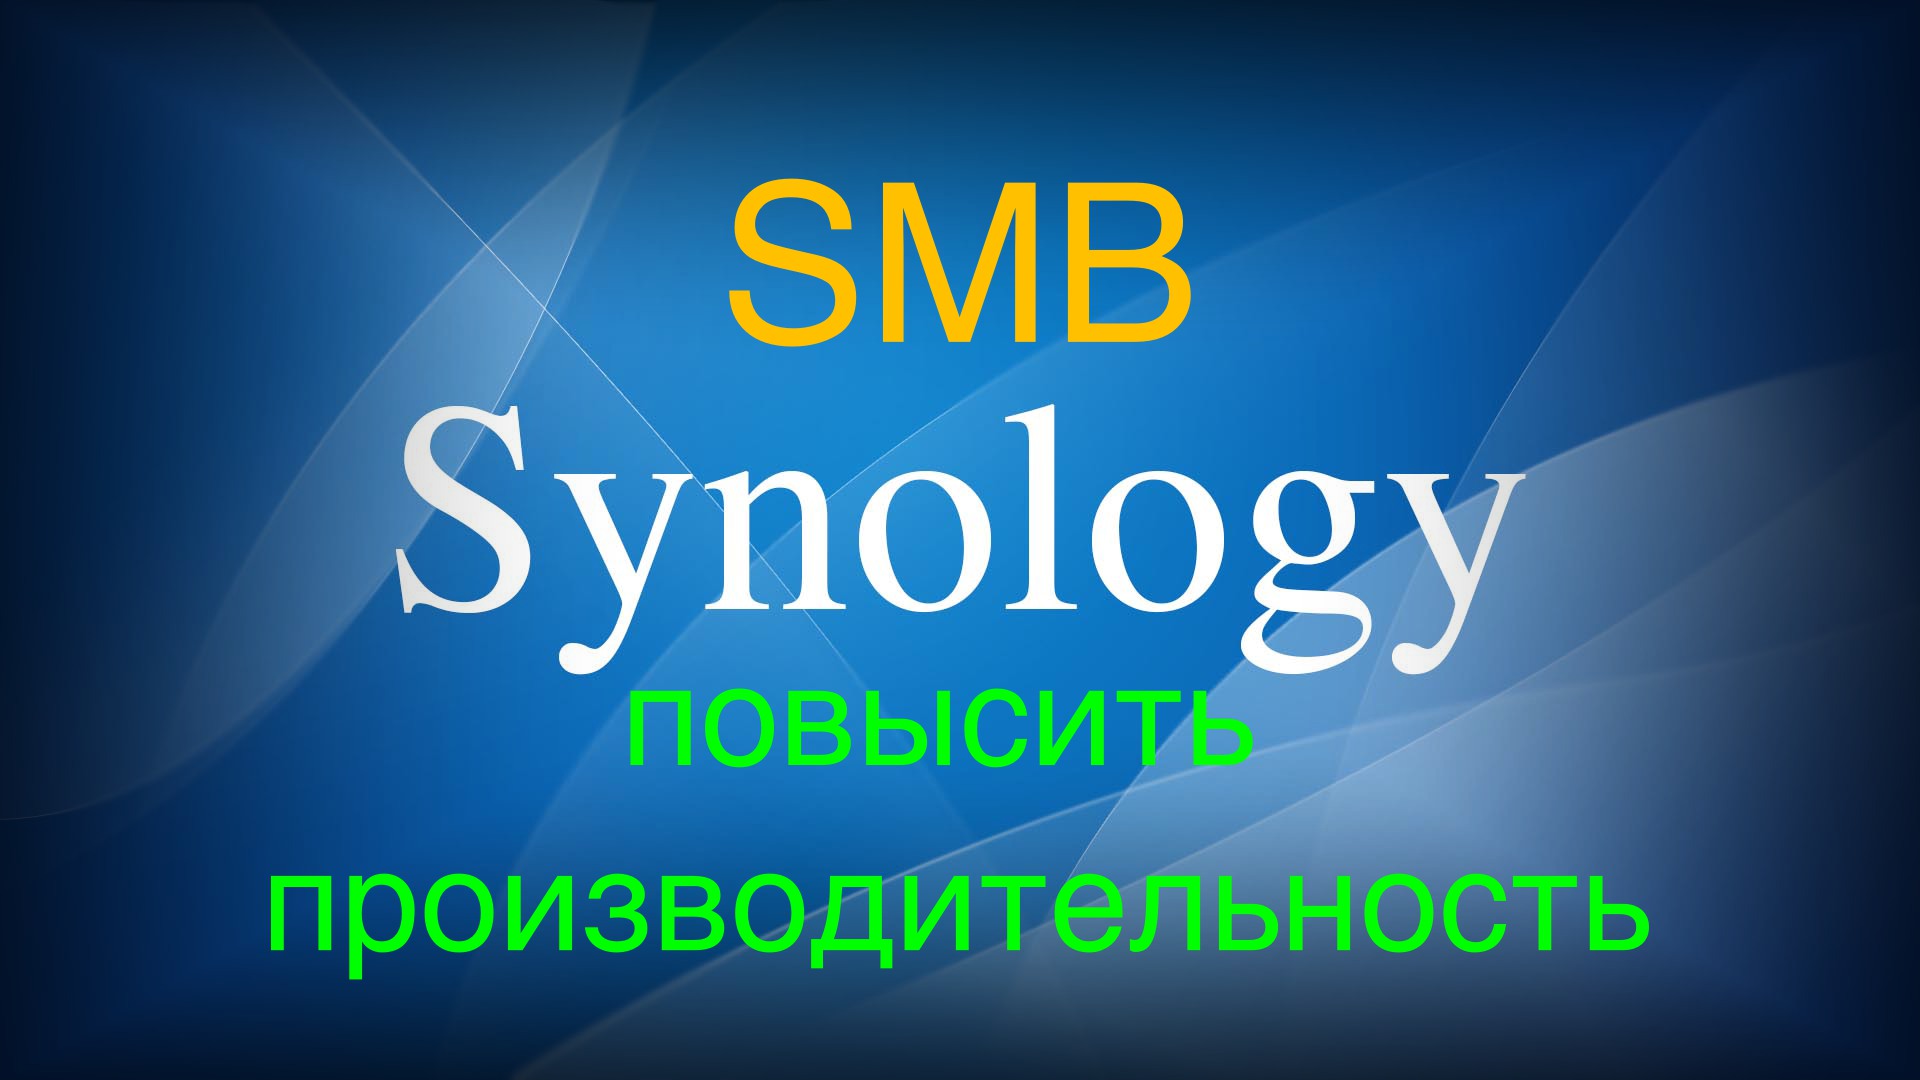 Read more about the article Synology как повысить производительность SMB